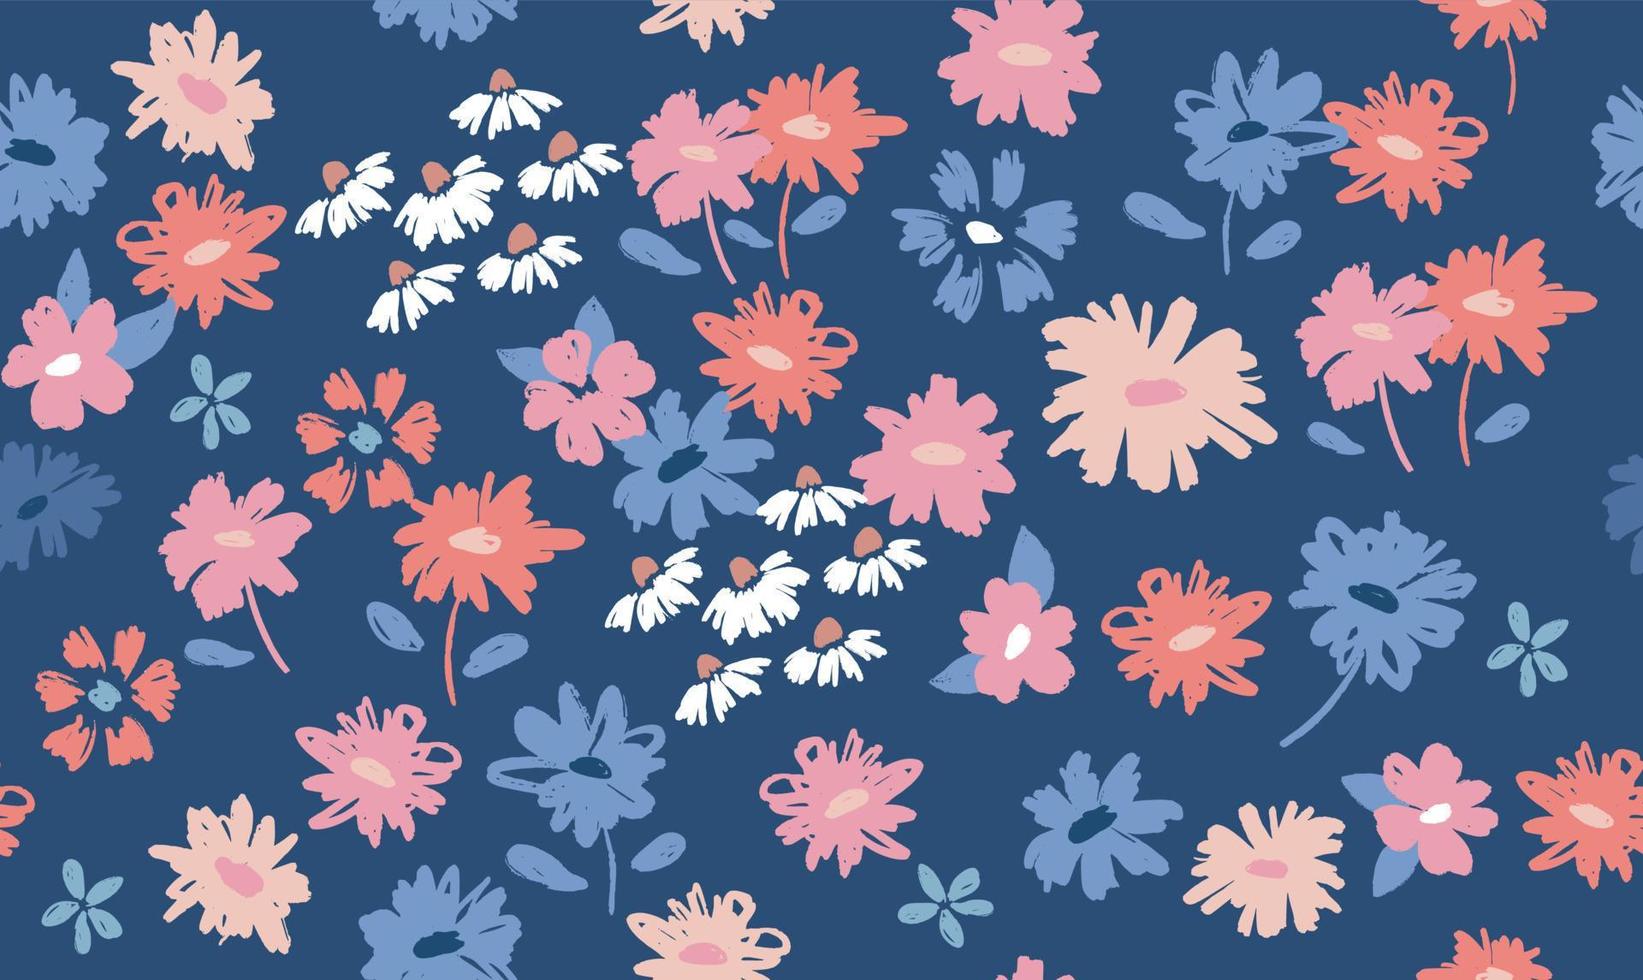 floraler hintergrund für textil, badeanzug, tapete, musterabdeckungen, oberfläche, geschenkverpackung. vektor